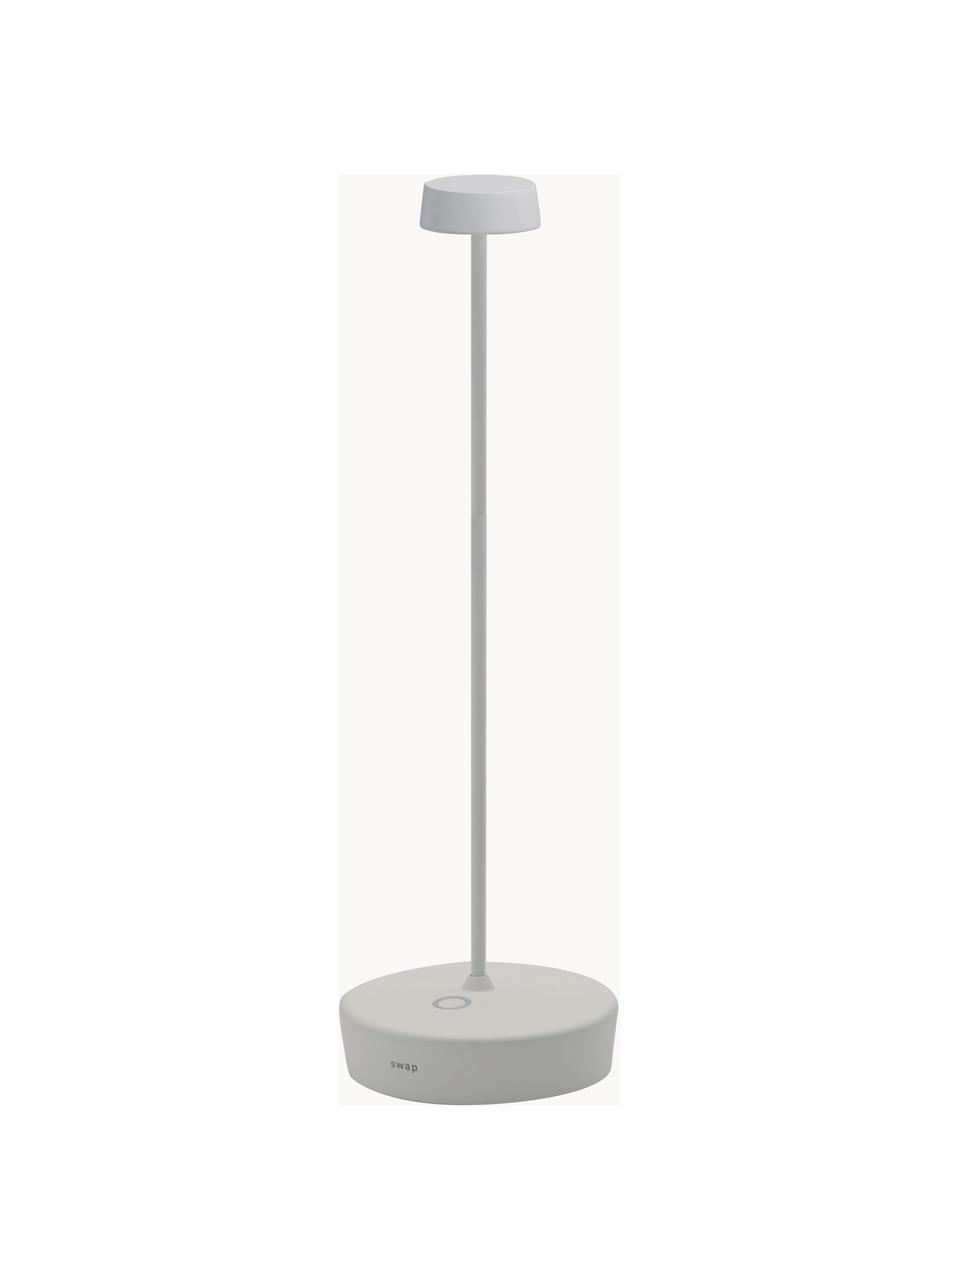 Mobilna lampa stołowa LED z funkcją przyciemniania Swap, Biały, Ø 10 x 33 cm